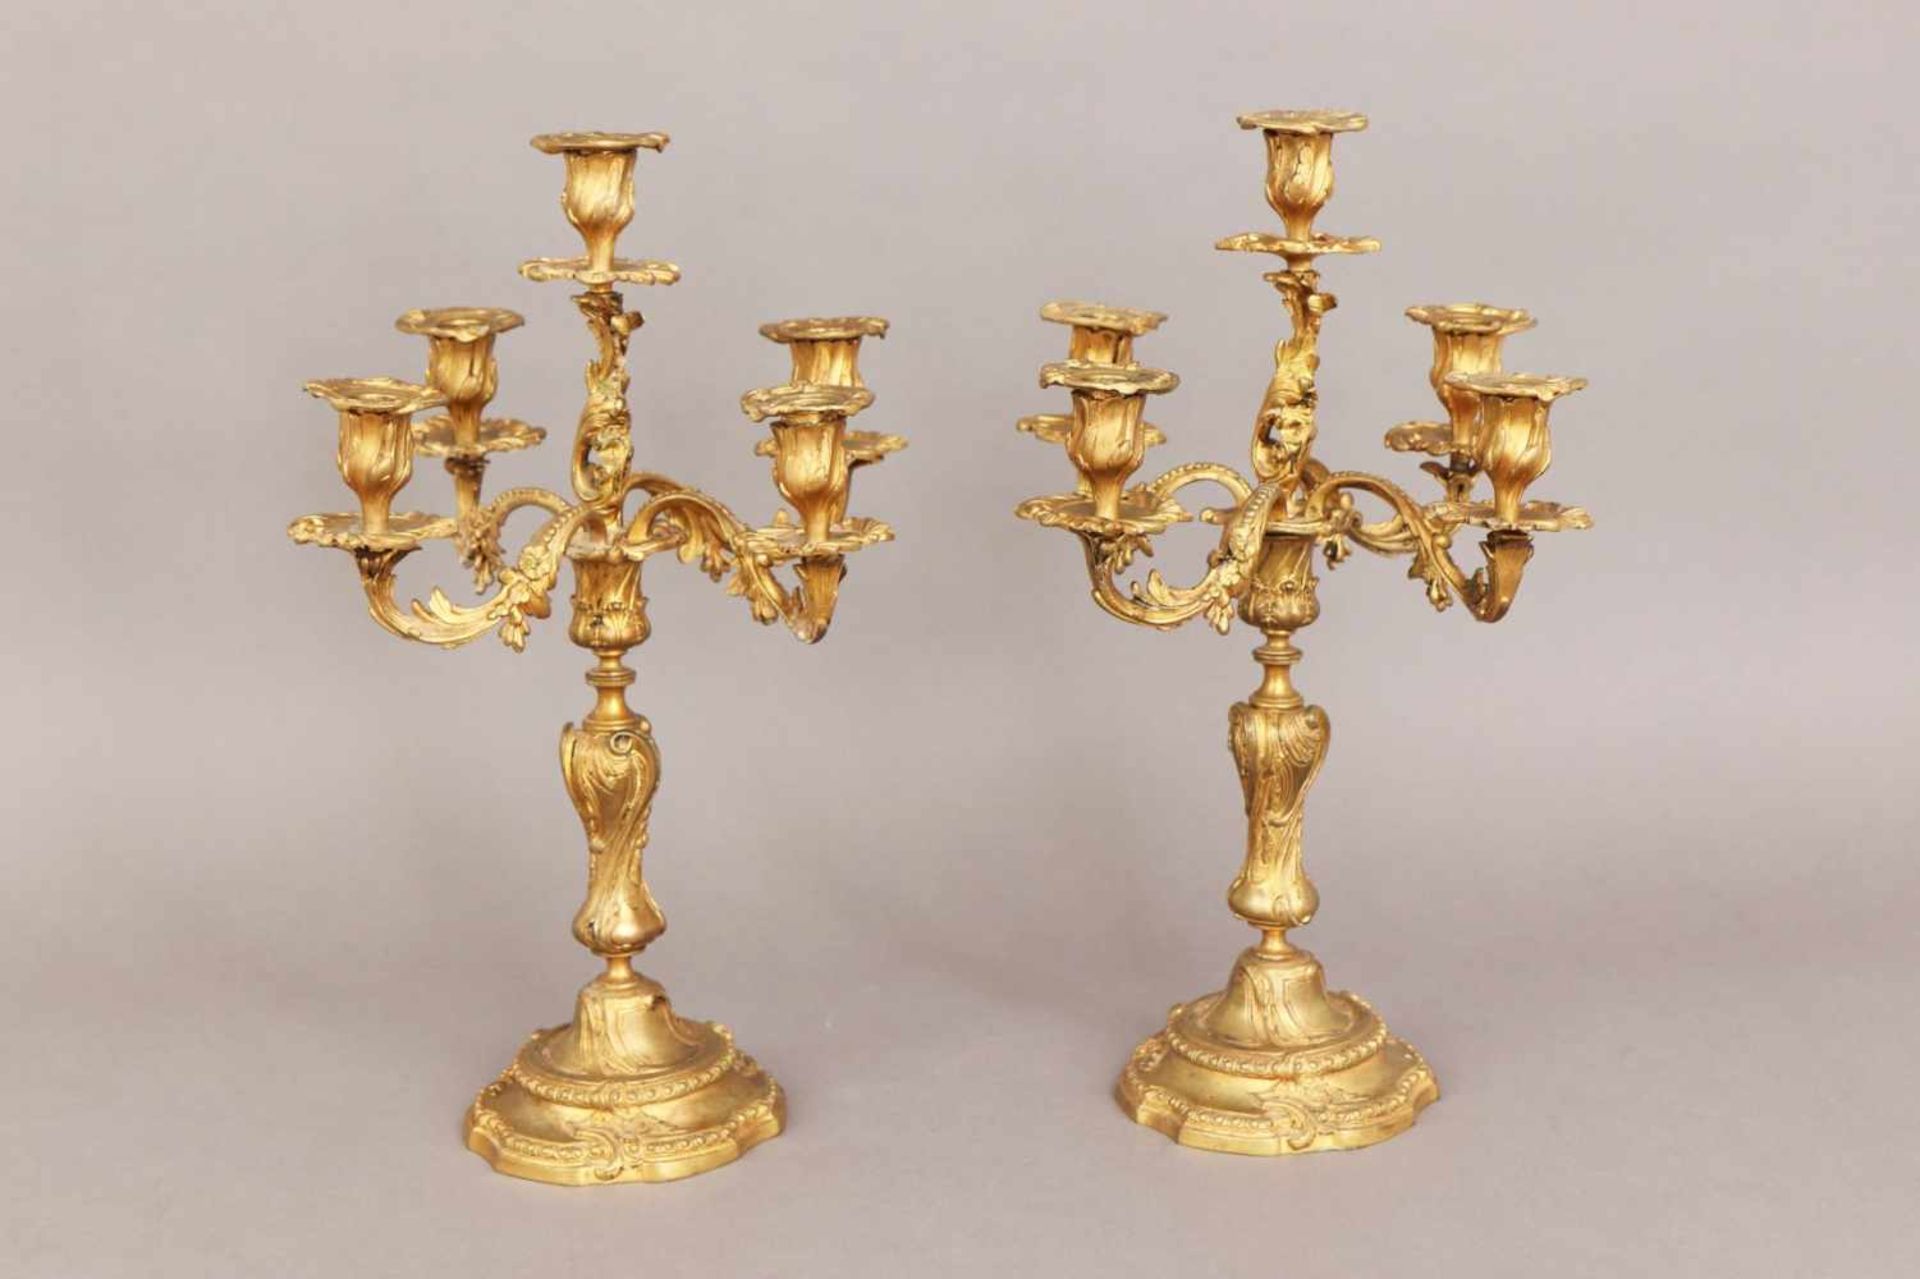 Paar feuervergoldete Bronze GirandolenFrankreich, 19. Jhdt., Formensprache des Rokoko, 5-flammig,